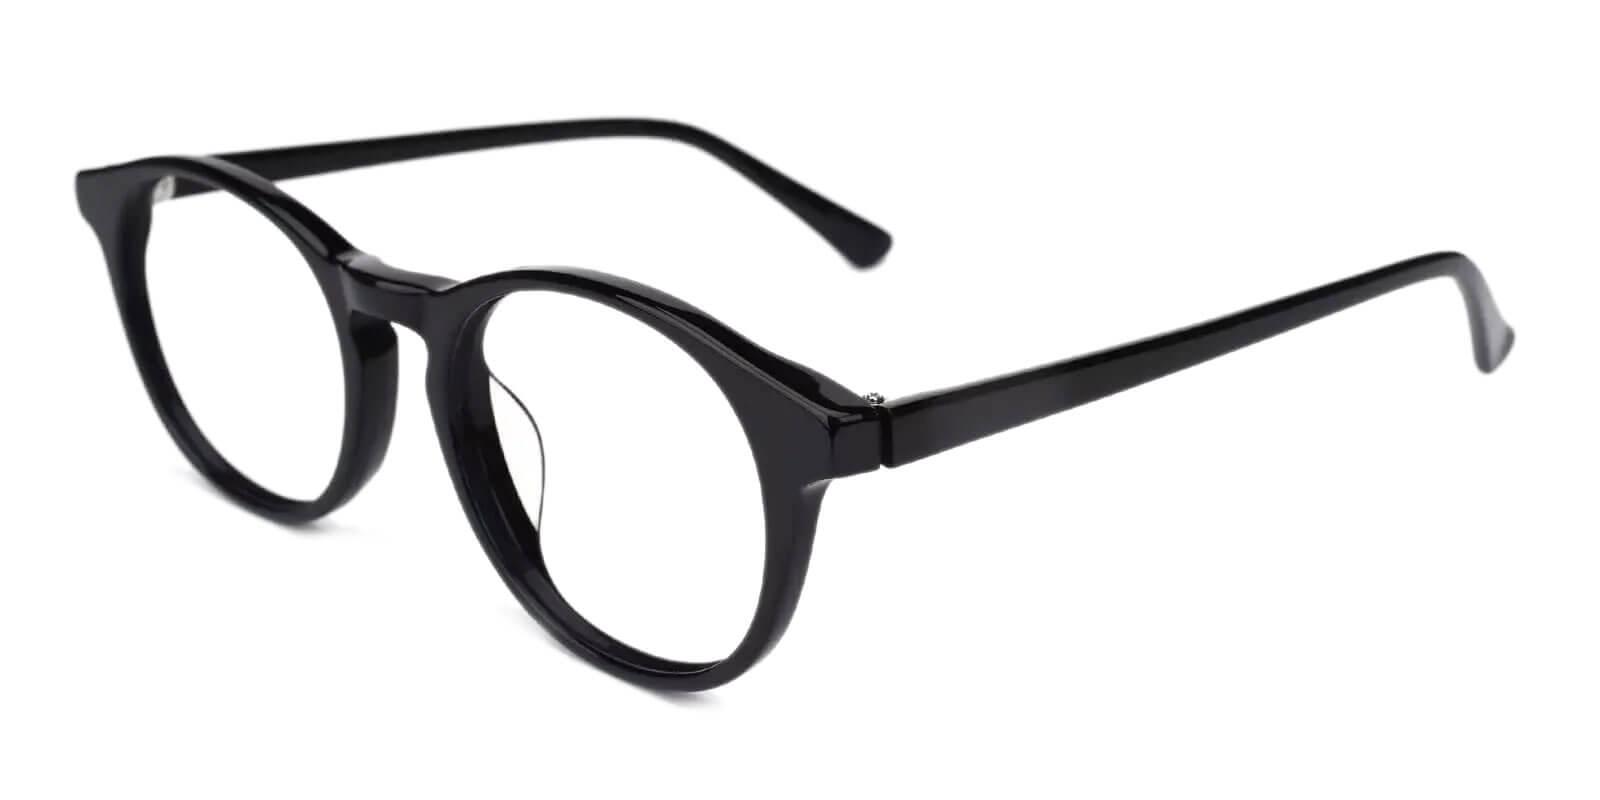 Holly Grove Black Acetate Eyeglasses , UniversalBridgeFit Frames from ABBE Glasses